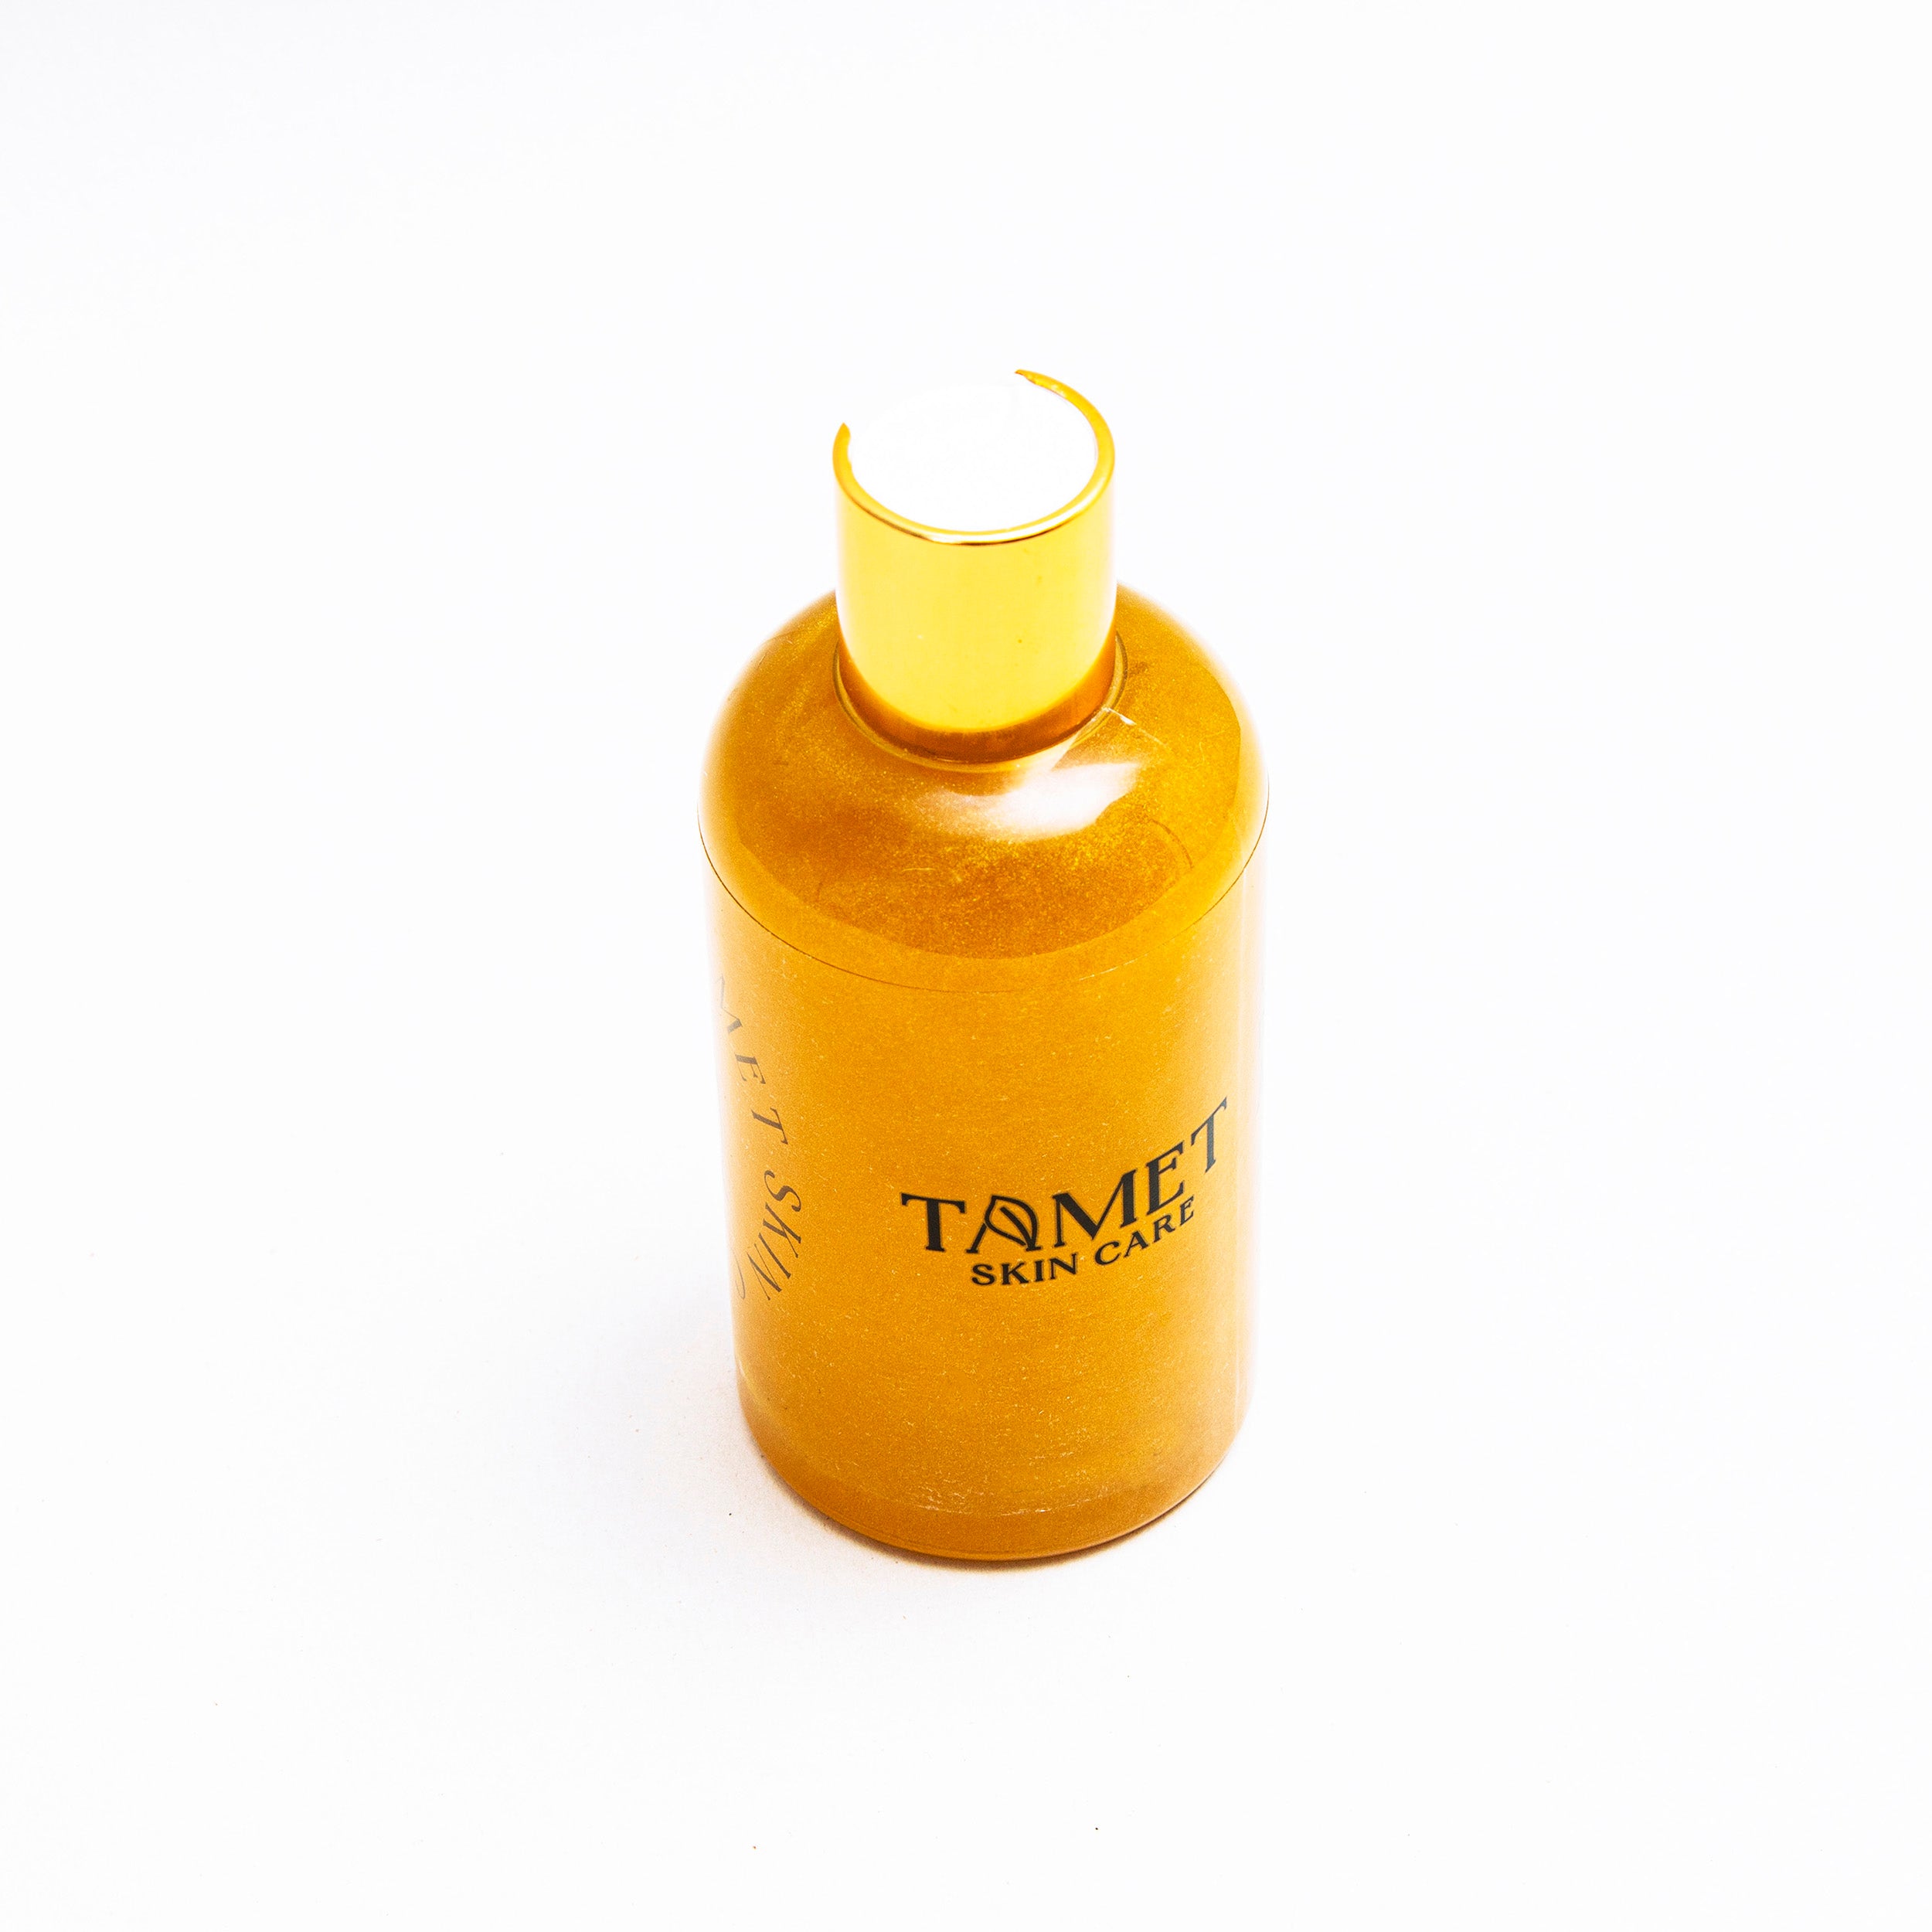 Tamet- Oleo bronceador